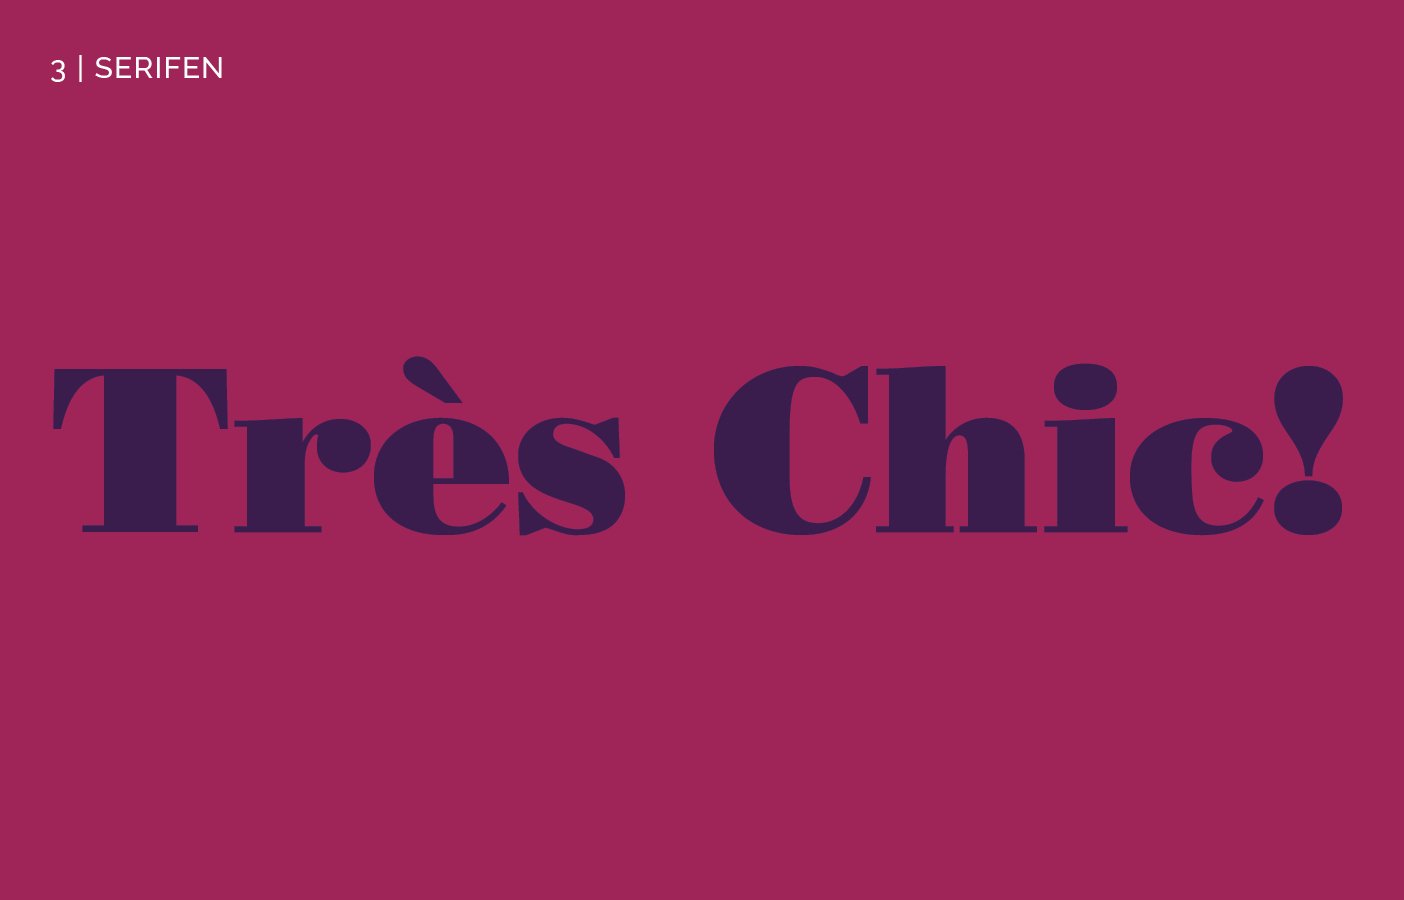 Schriftzug "Très Chic!" auf weinrot